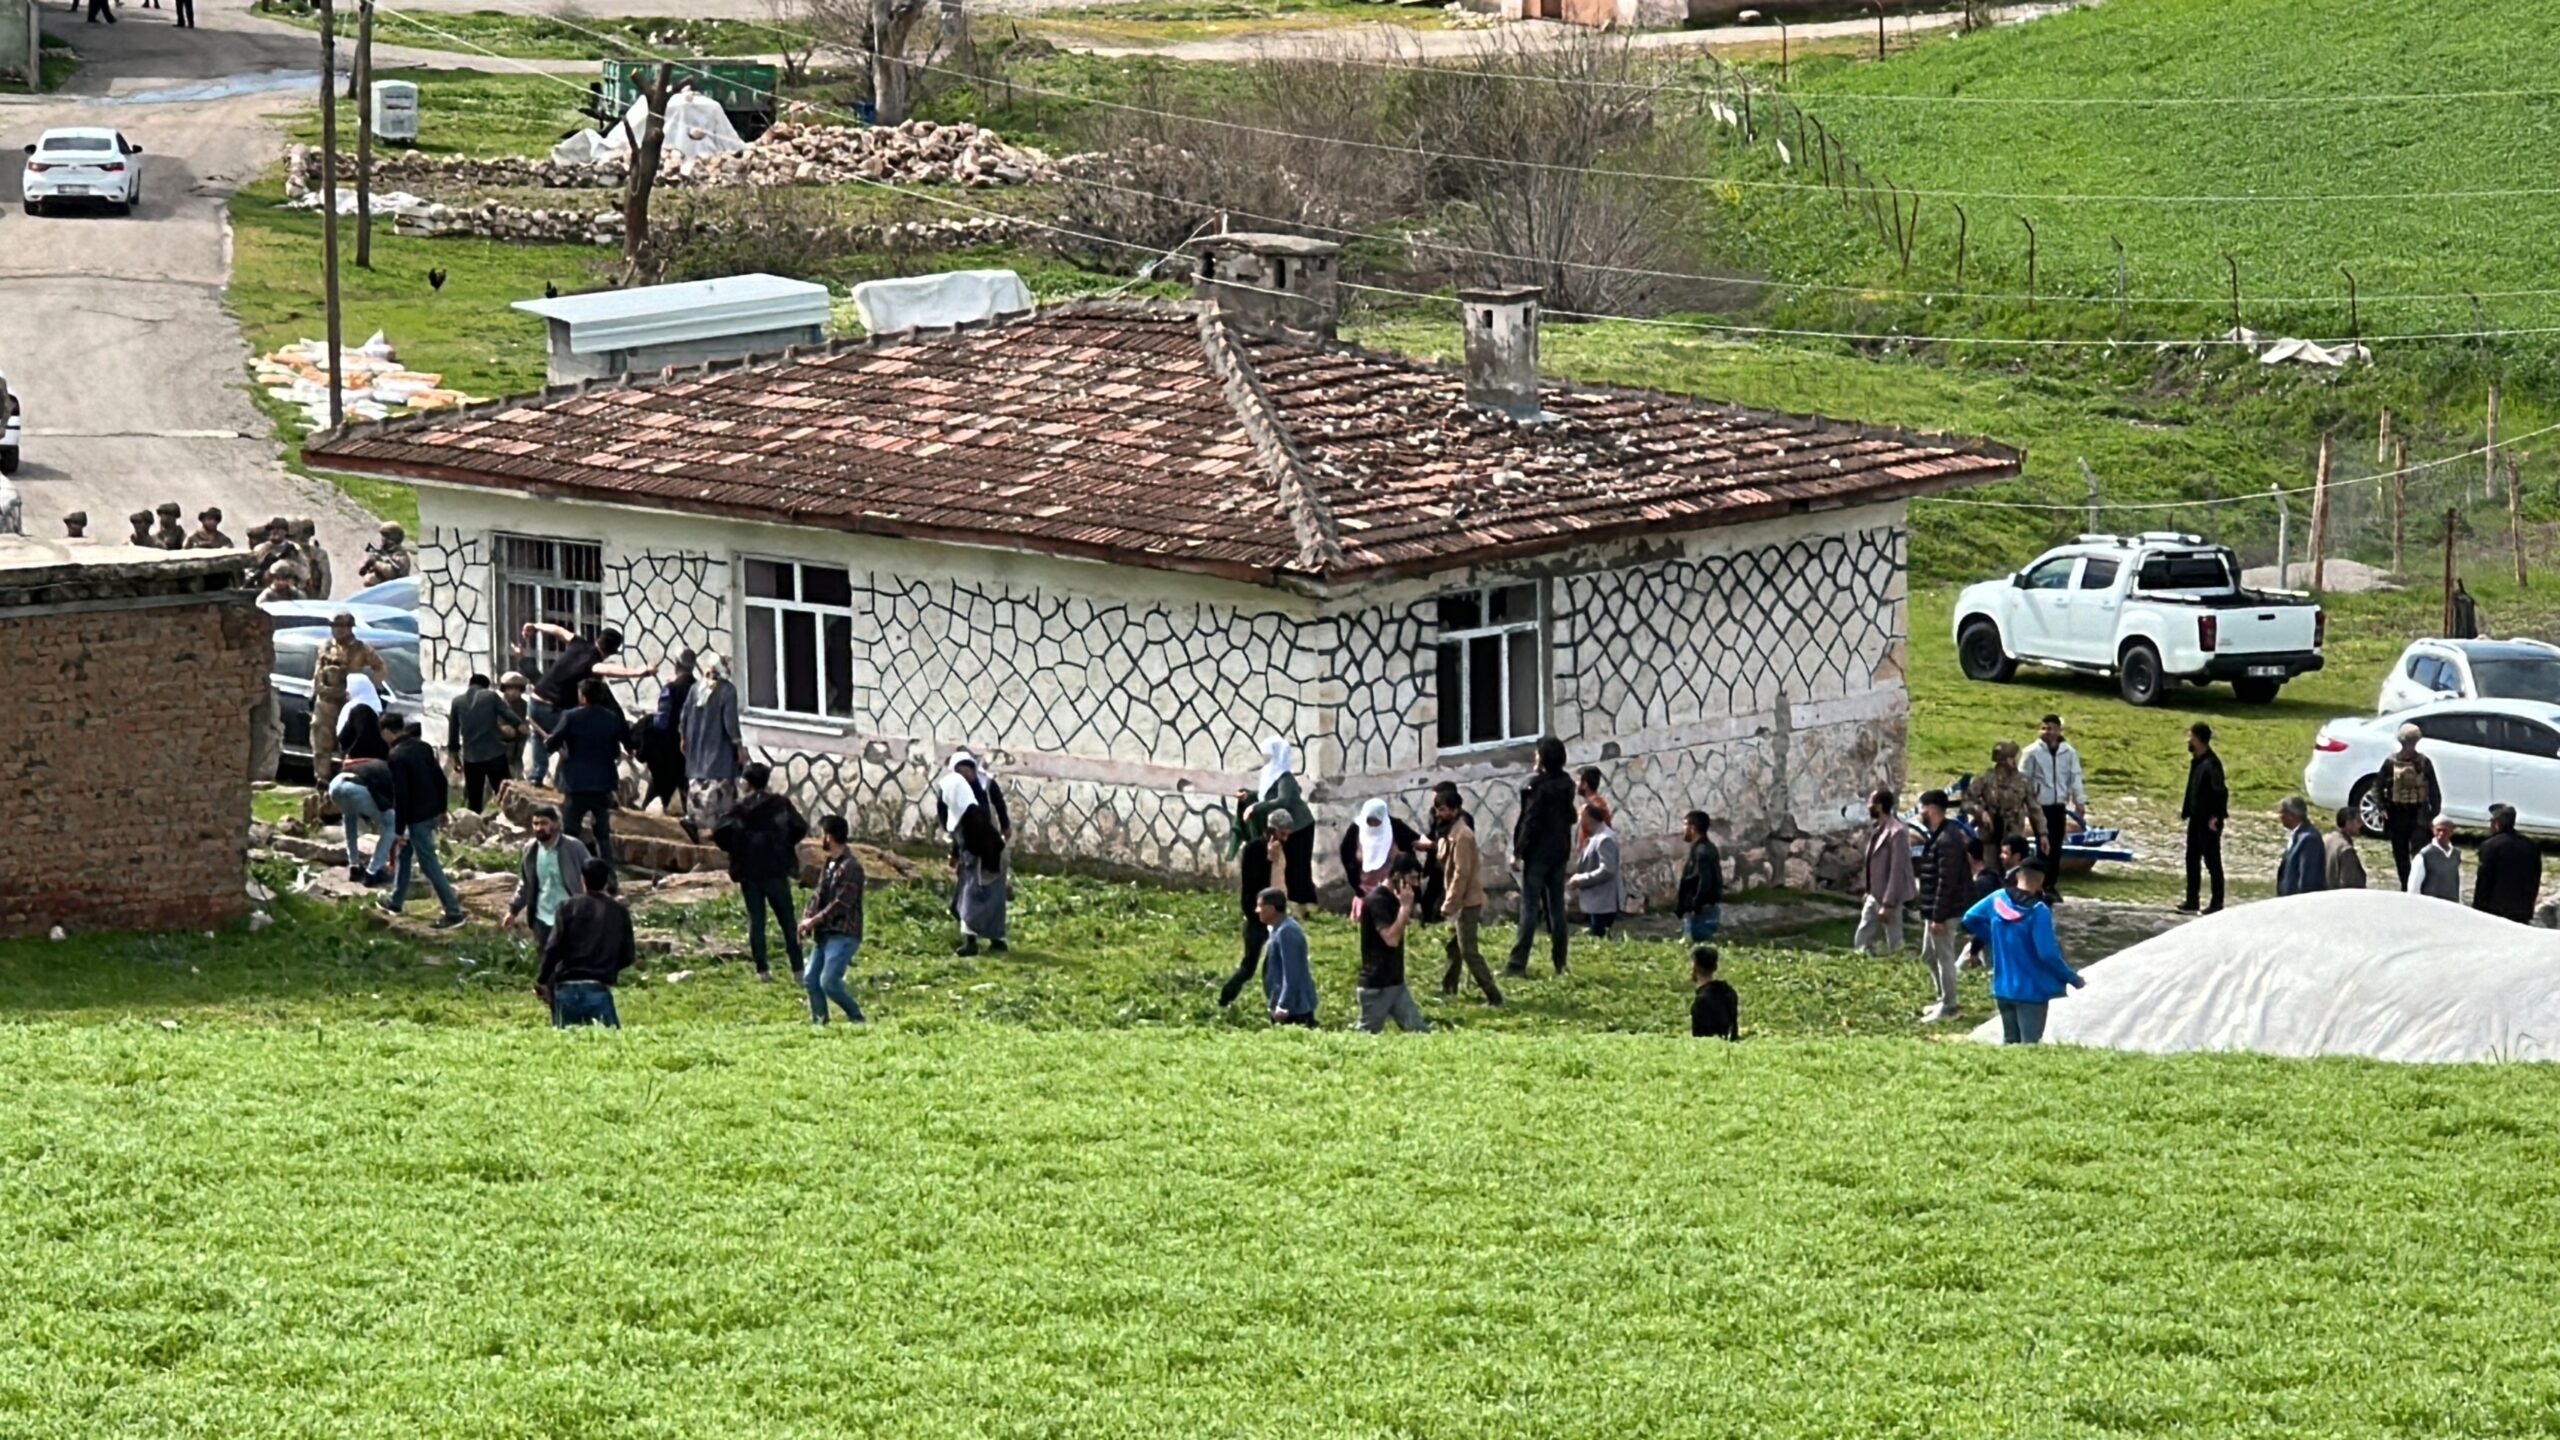 Diyarbakır’da 1 kişinin öldüğü muhtarlık kavgasında 14 kişiye gözaltı